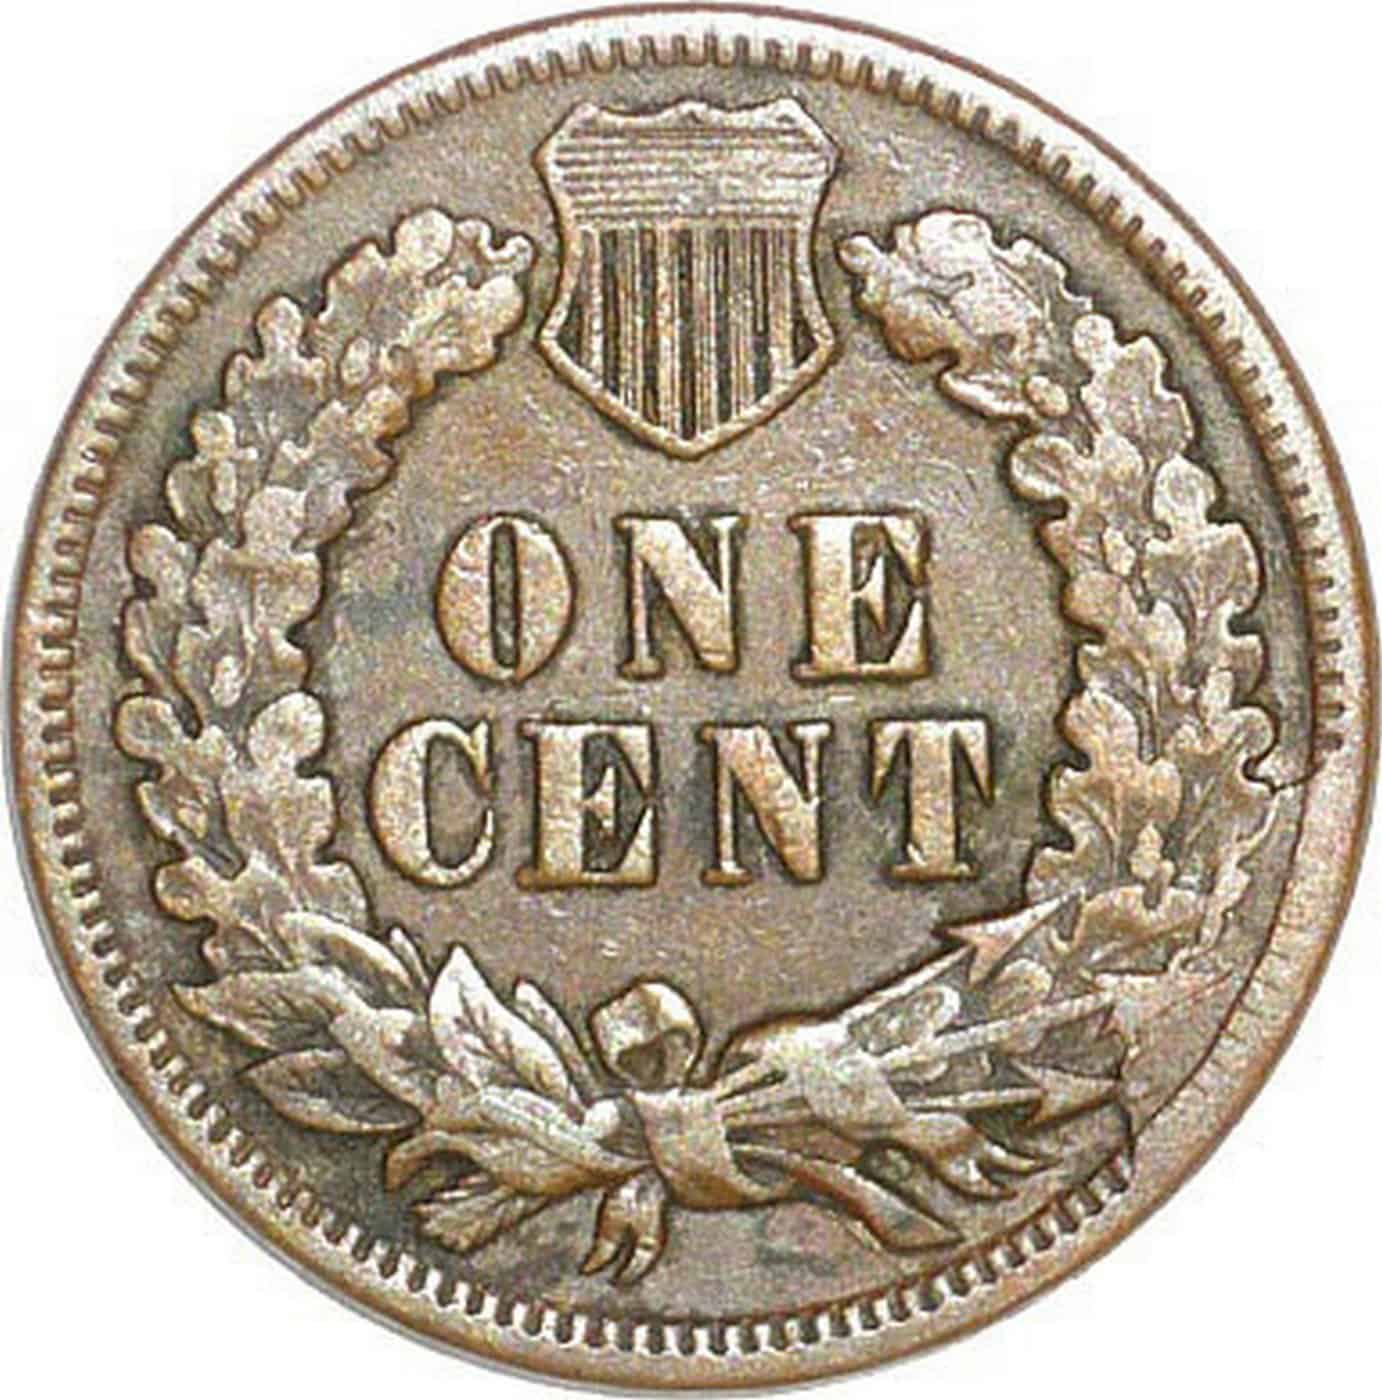 1905 Indian Head penny die breaks